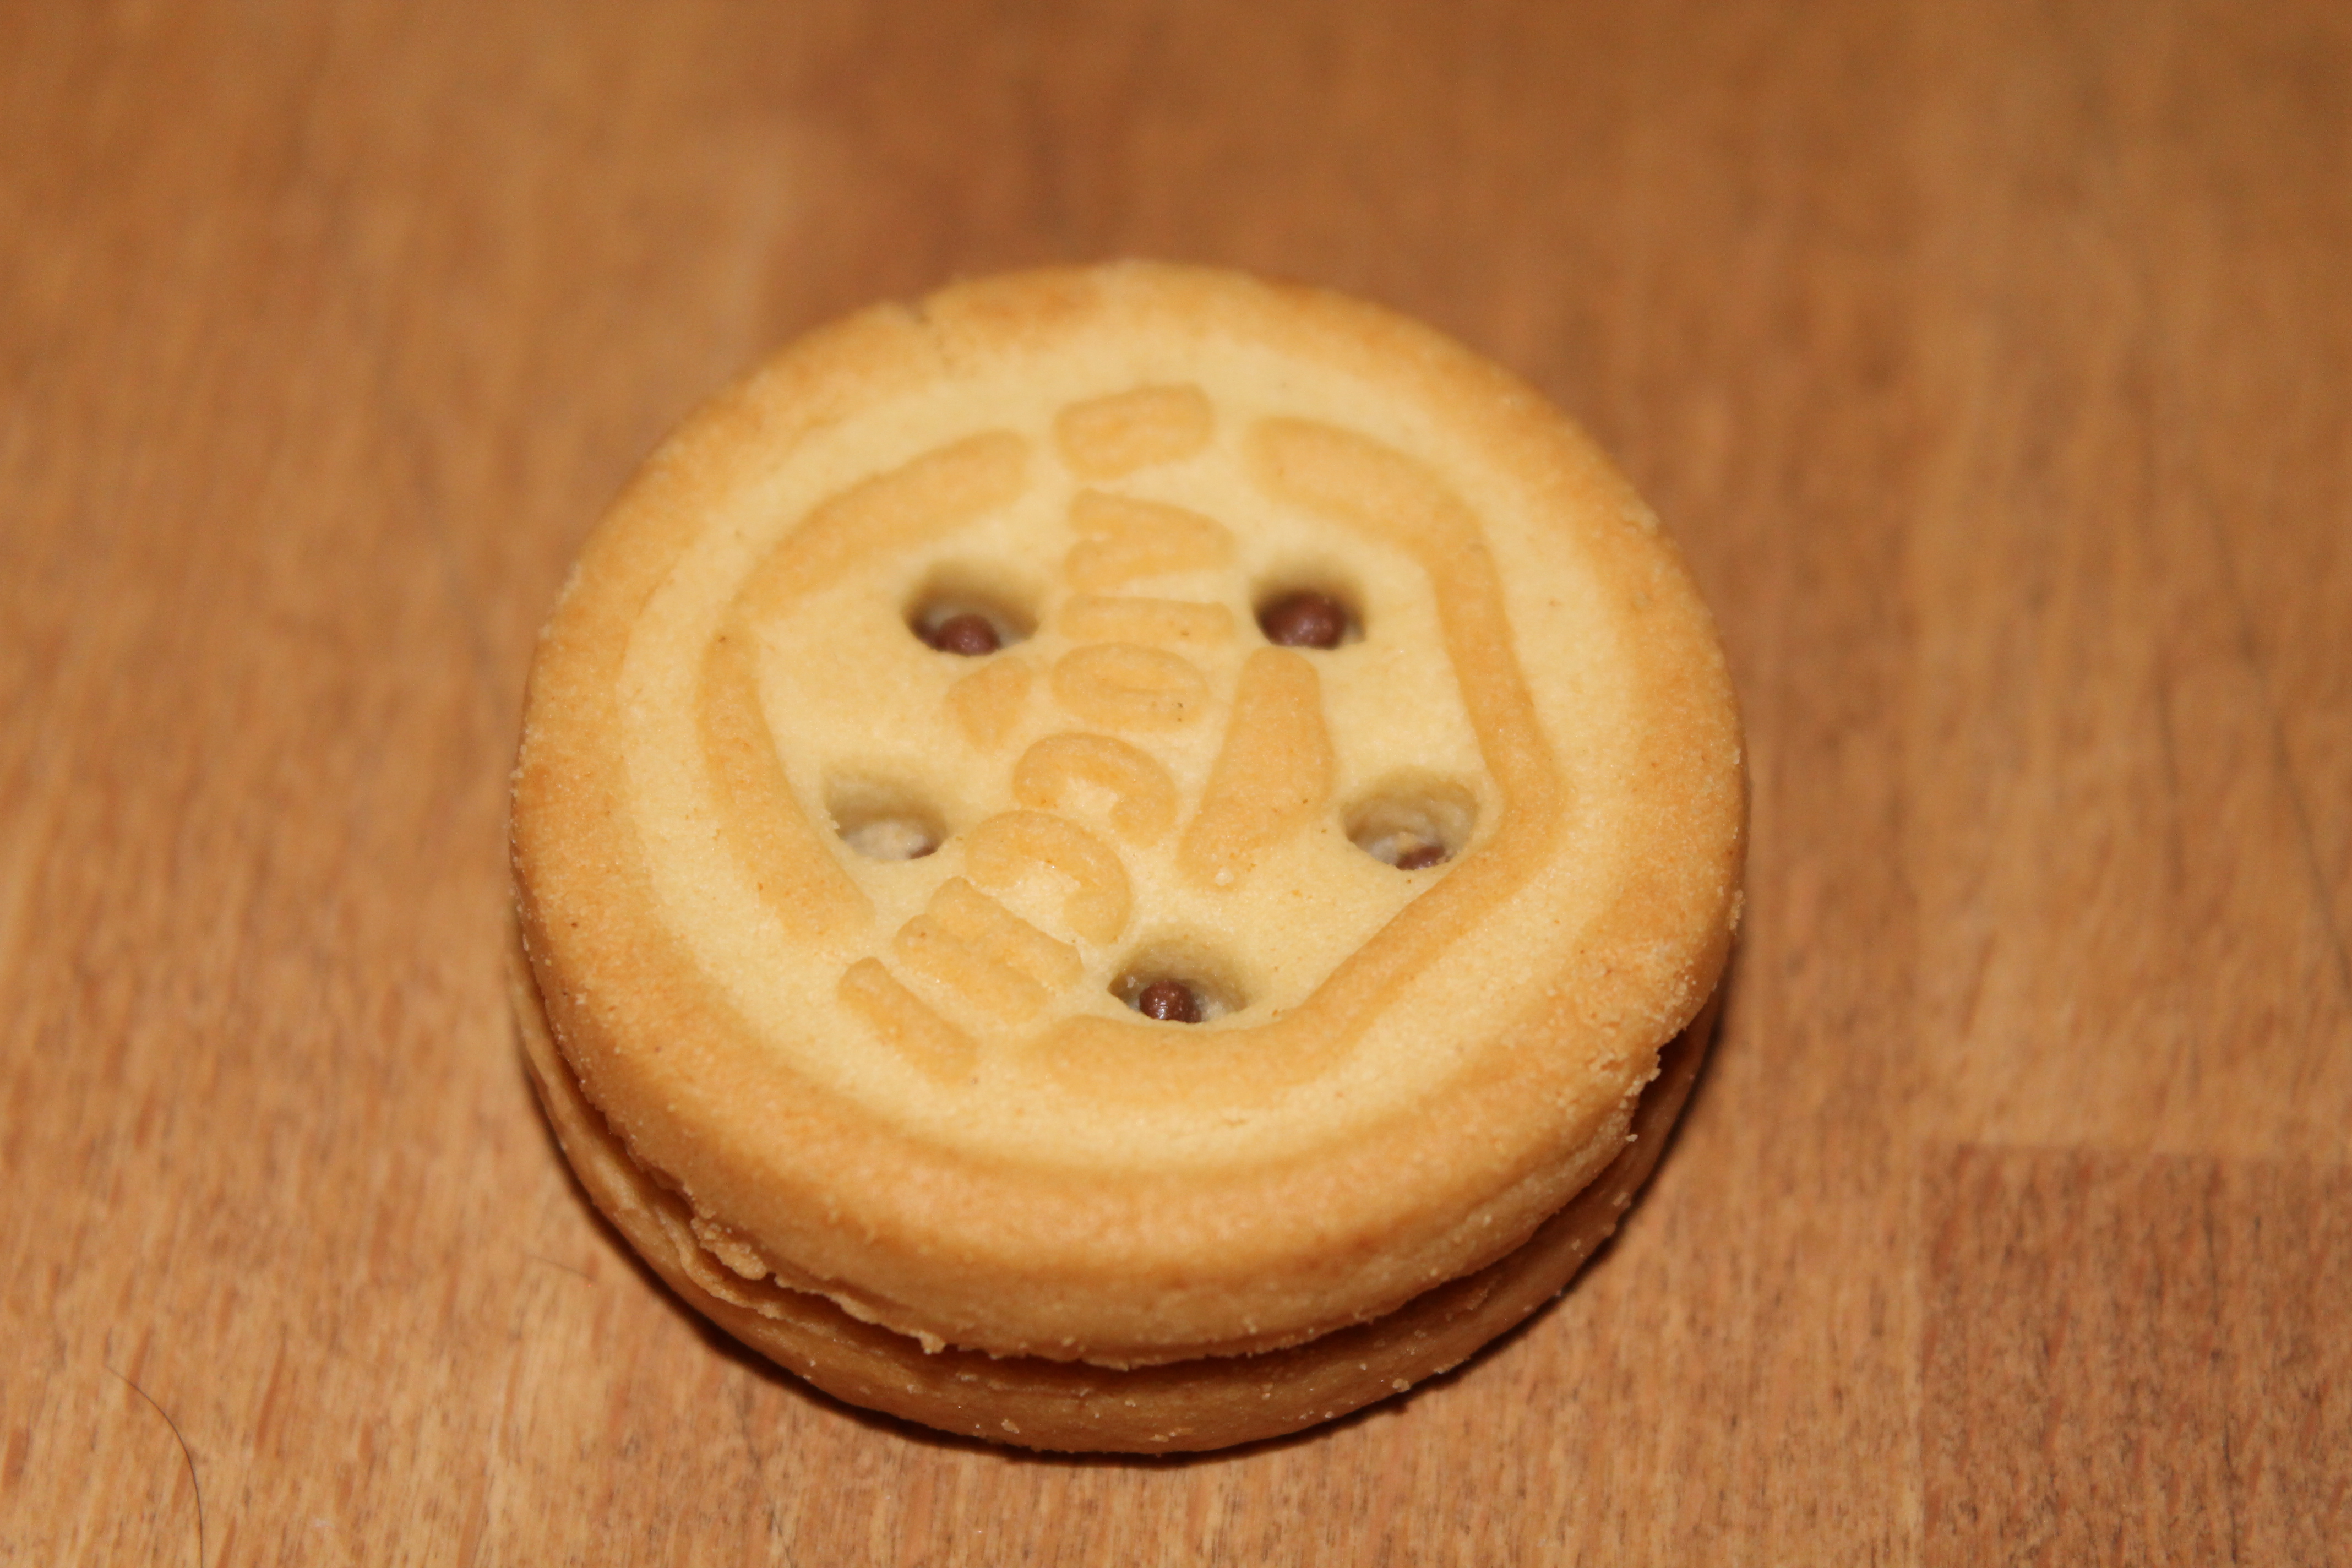 Mulino Bianco Biscuits Baiocchi fourrés à la Crème aux Noisettes